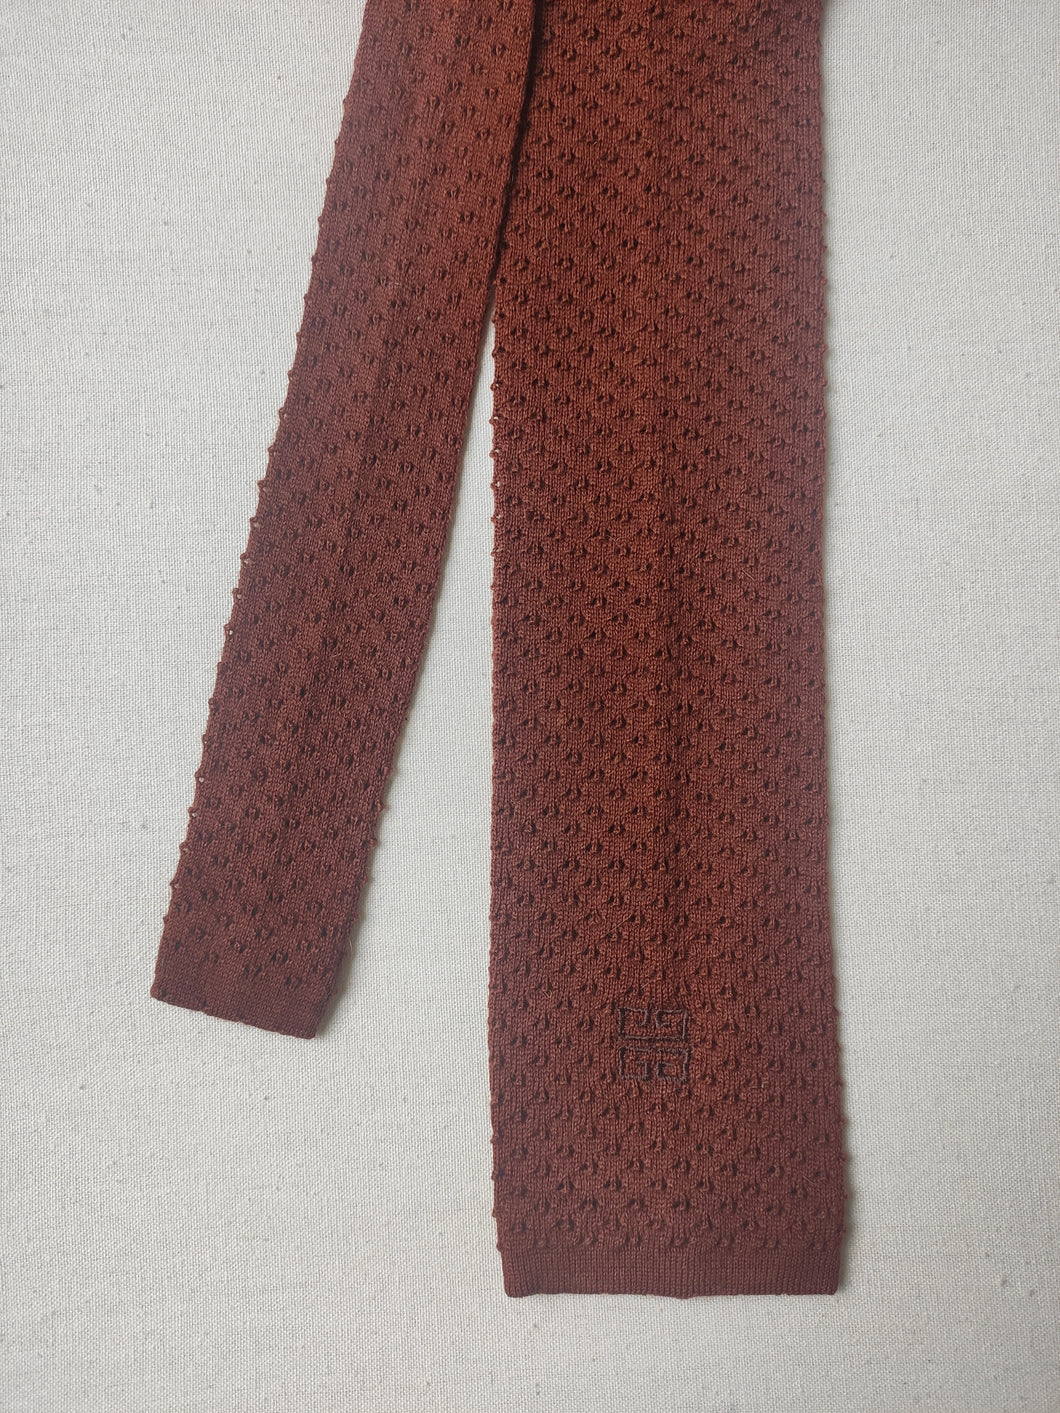 Givenchy Gentleman Paris cravate maille vintage 100% laine terracotta